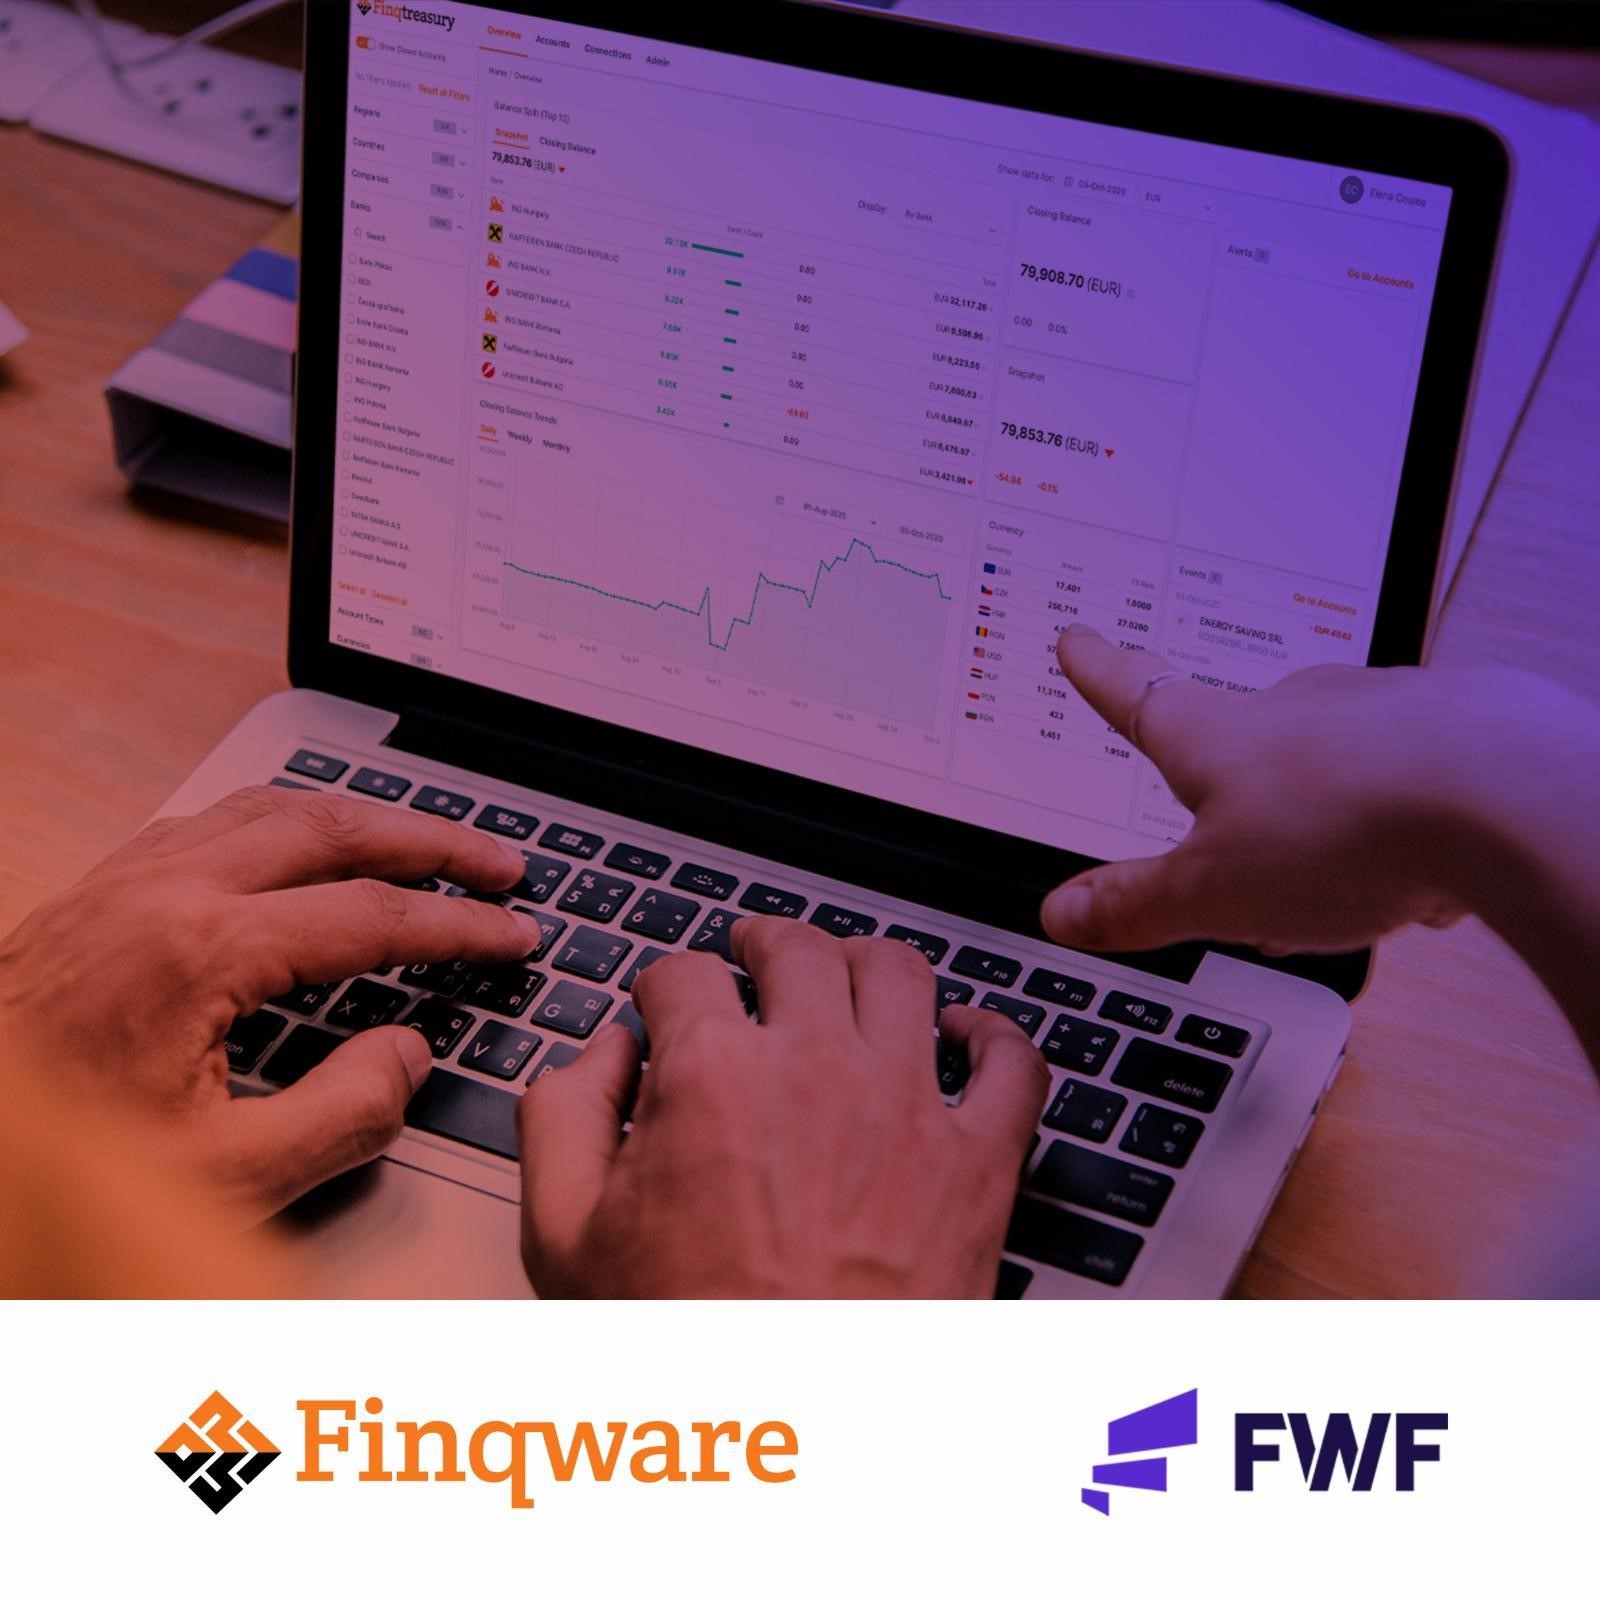 Start-up-ul Finqware, care a dezvoltat o soluţie de integrare şi open banking, a semnat un parteneriat cu FutureWorkForce, membră a grupului de firme Arobs Transilvania Software, pentru a oferi soluţii avansate de automatizare a operaţiunilor financiare în companii